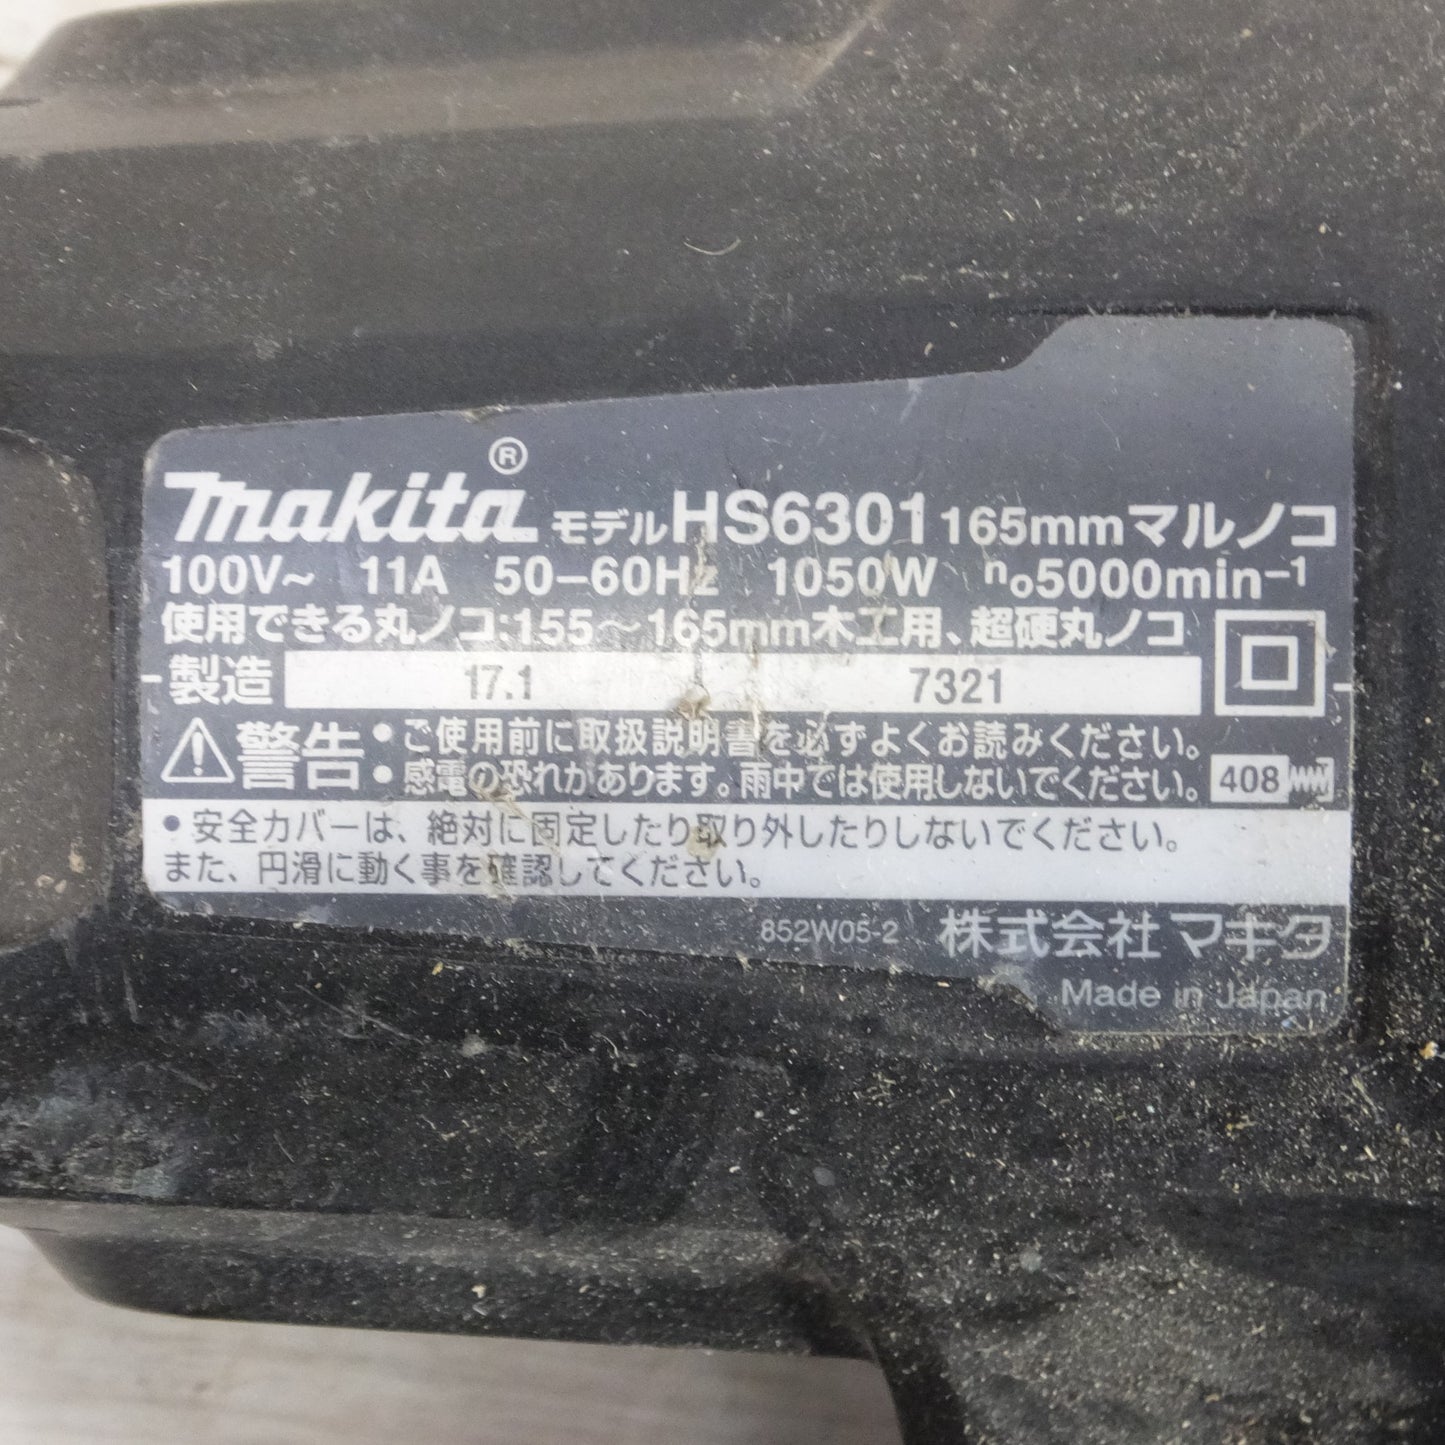 [送料無料] ◆makita マキタ 165mm マルノコ HS6301 木工用 丸のこ 切断機 電動工具 100V◆